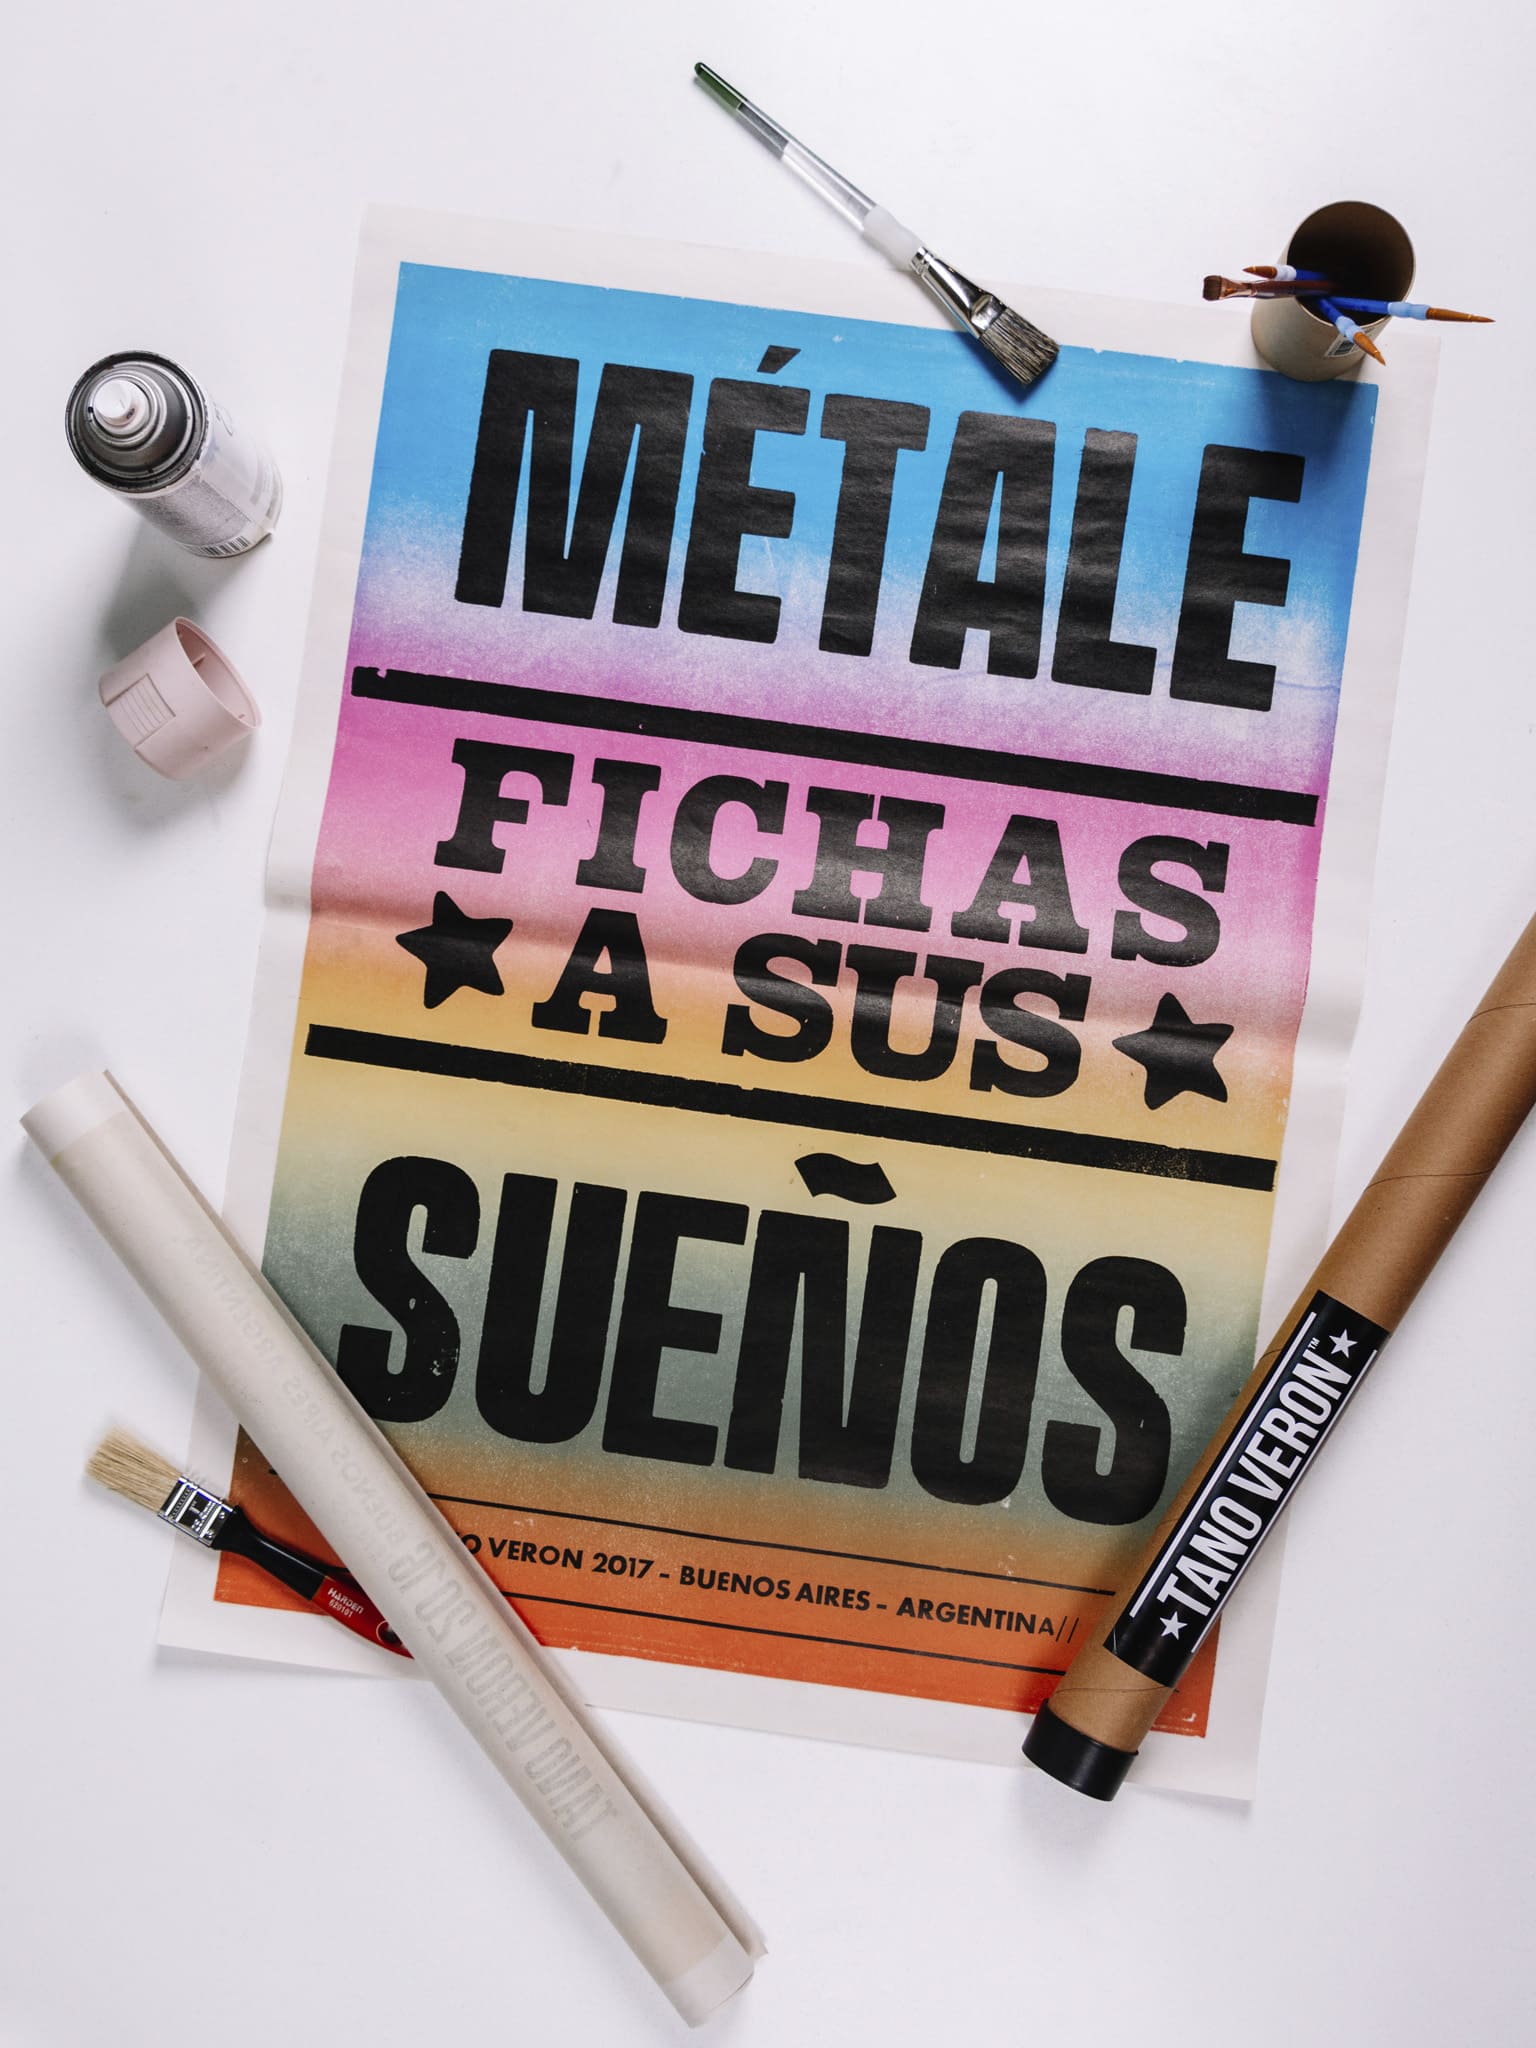 Afiche callejero del Tano Verón con la frase "Métale fichas a sus sueños". 